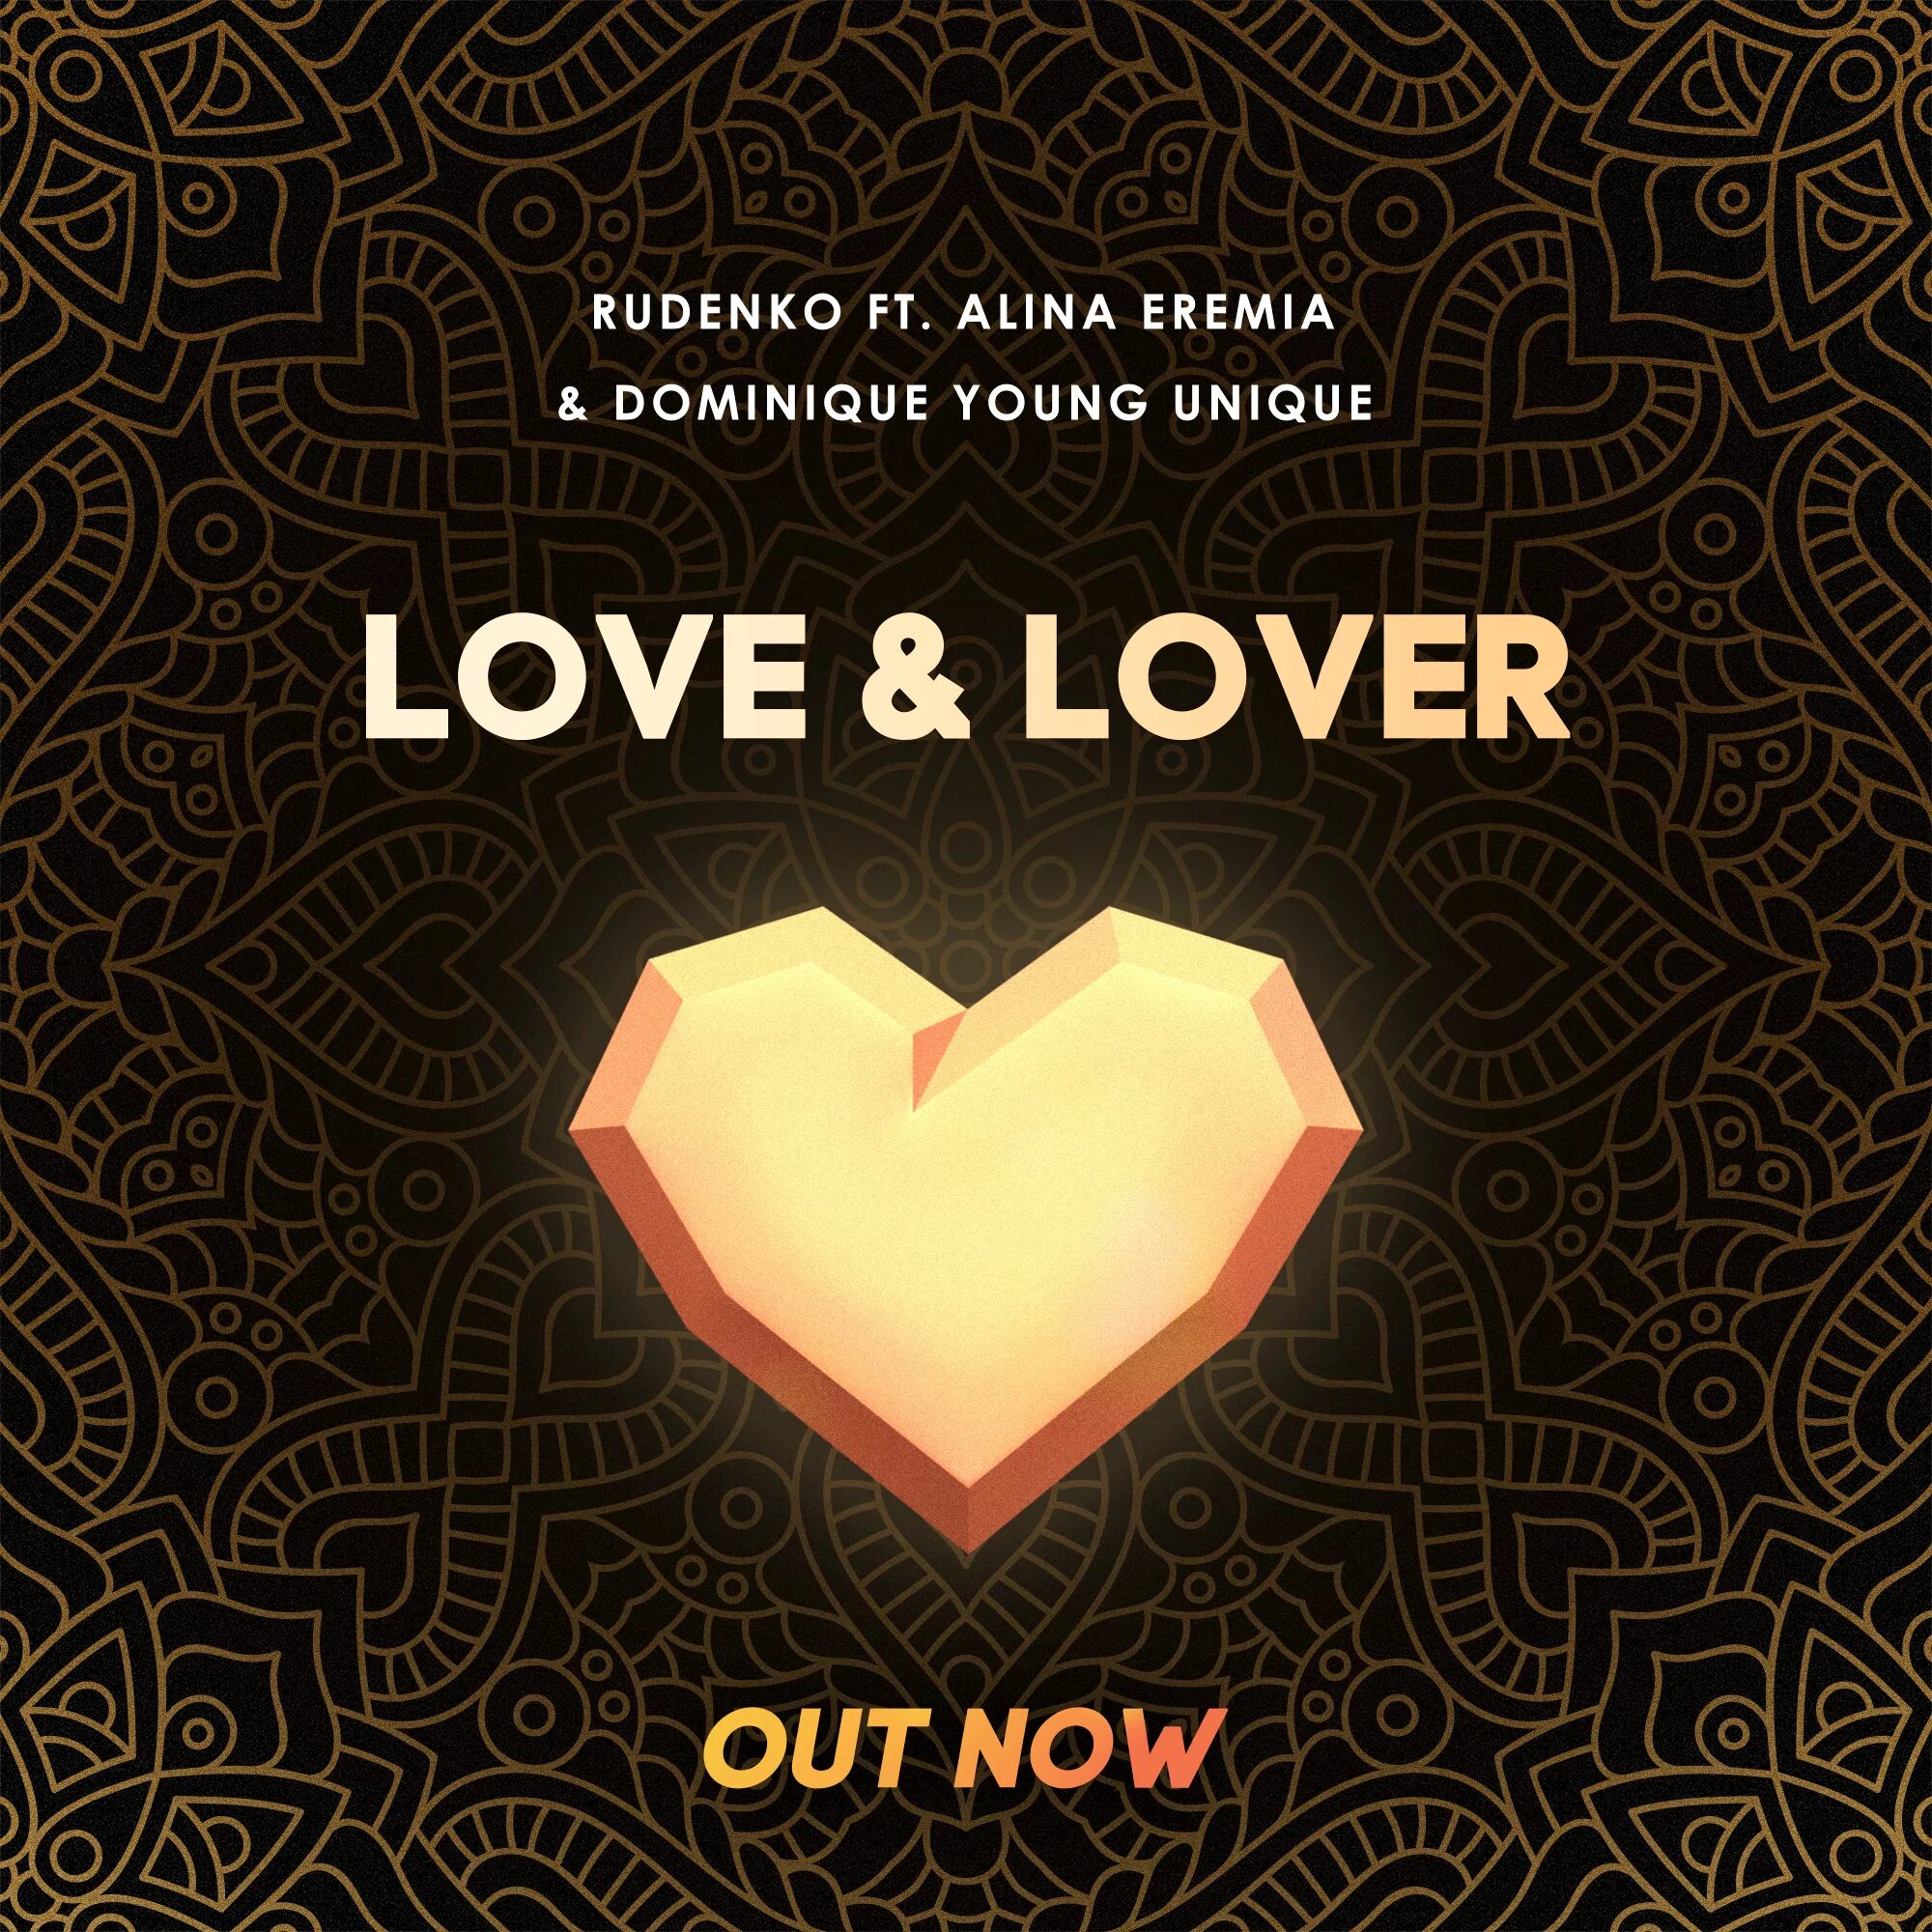 Leonid Rudenko & Alina Eremia - Love lover. DJ Leonid Rudenko - Love and lover feat Alina Eremia and Dominique young unique. Лове ловер